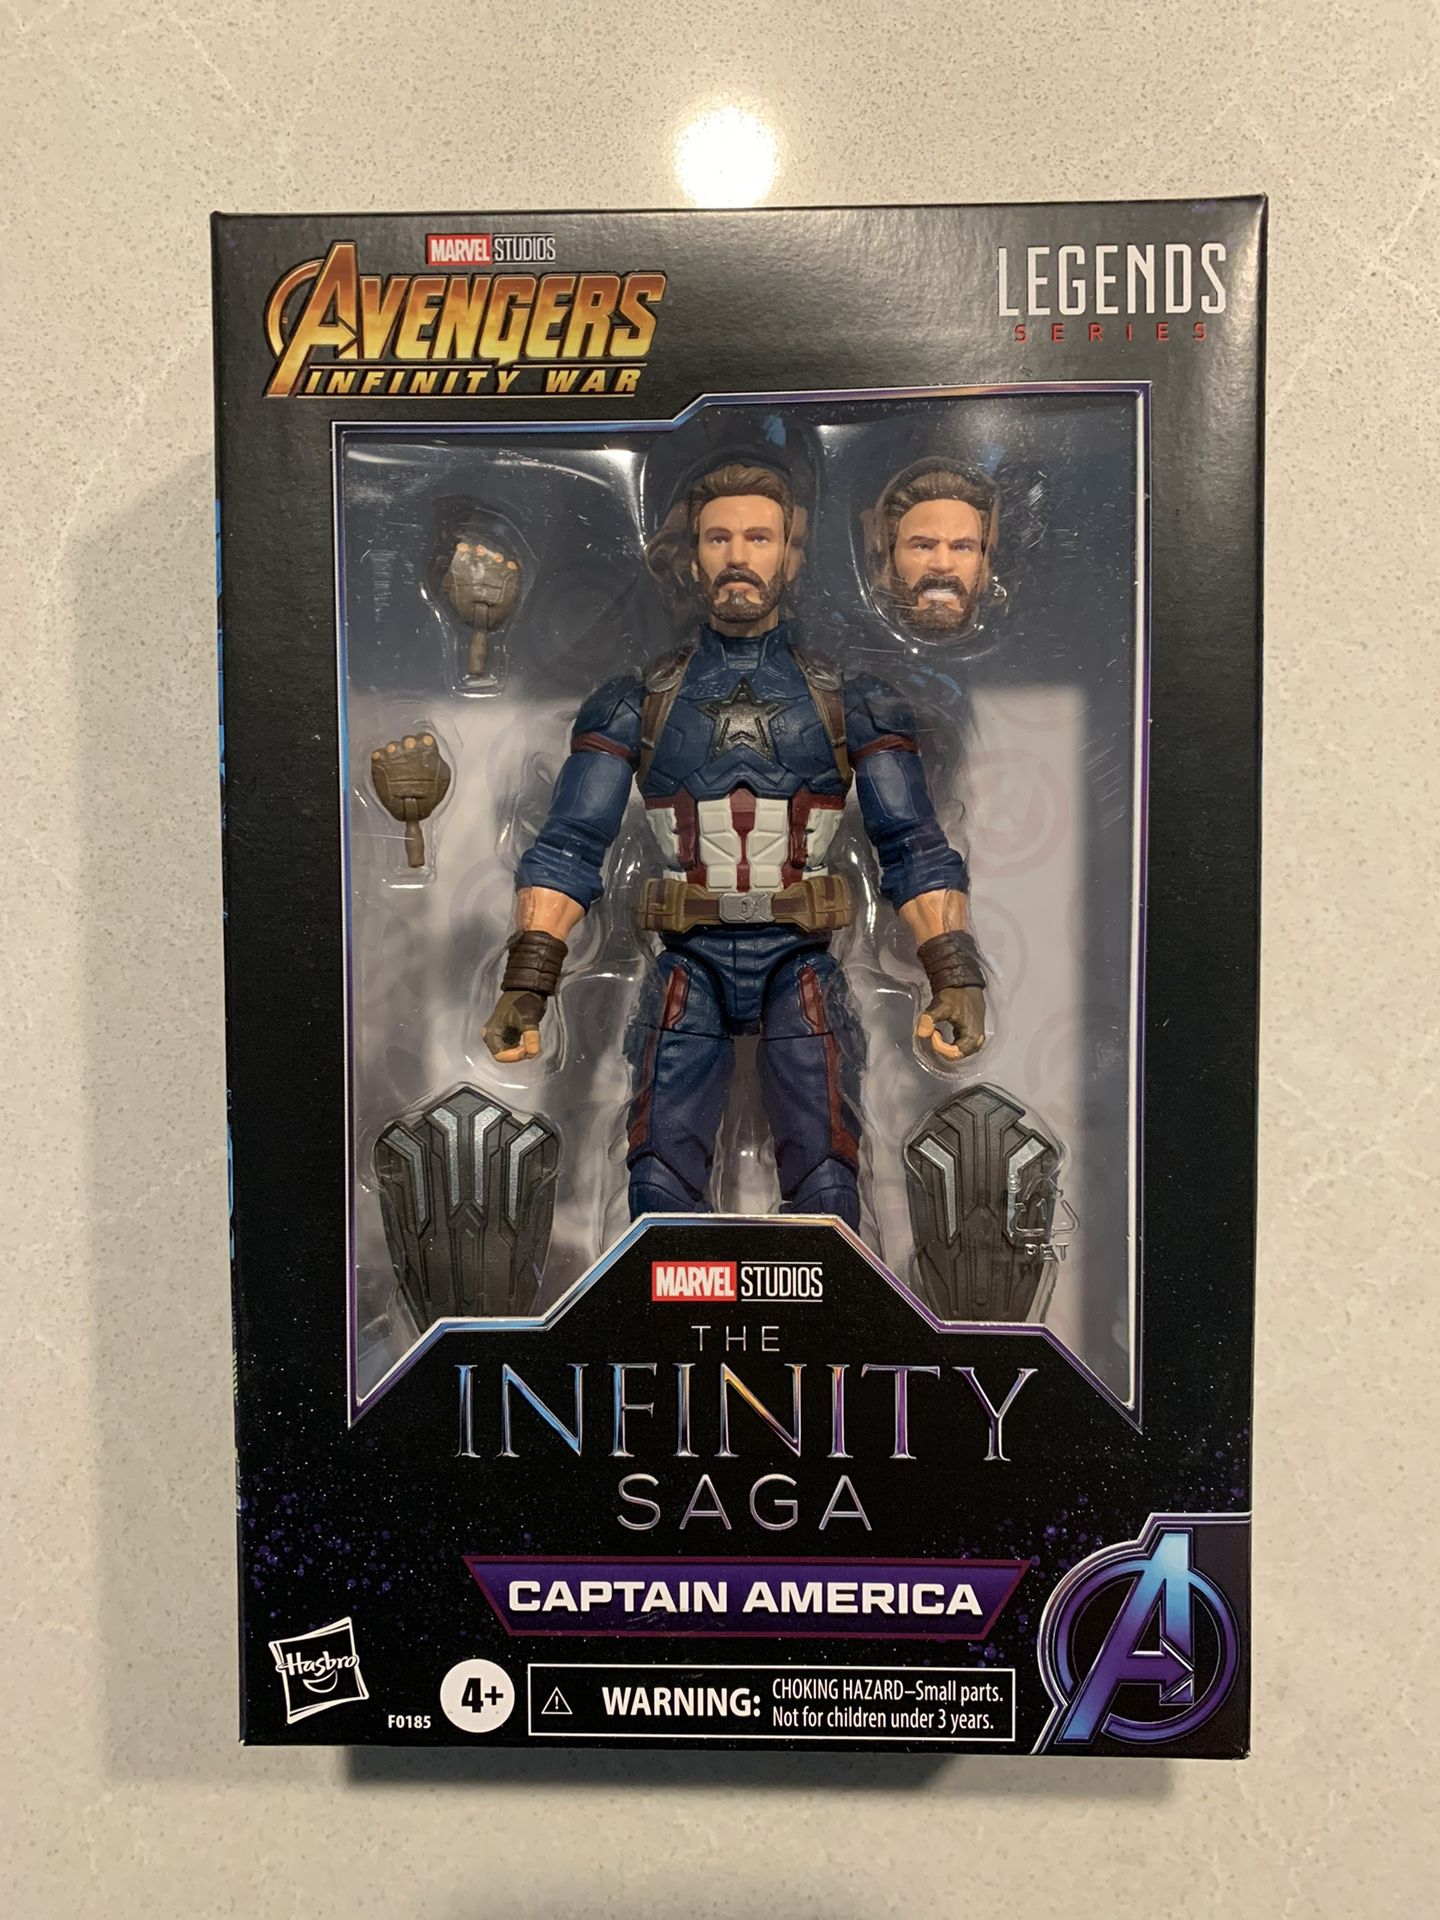 Captain America Premium Marvel Legends Figure *MINT IN HAND* Avengers Infinity Saga Endgame Steve Rogers Hasbro F0185 Statue